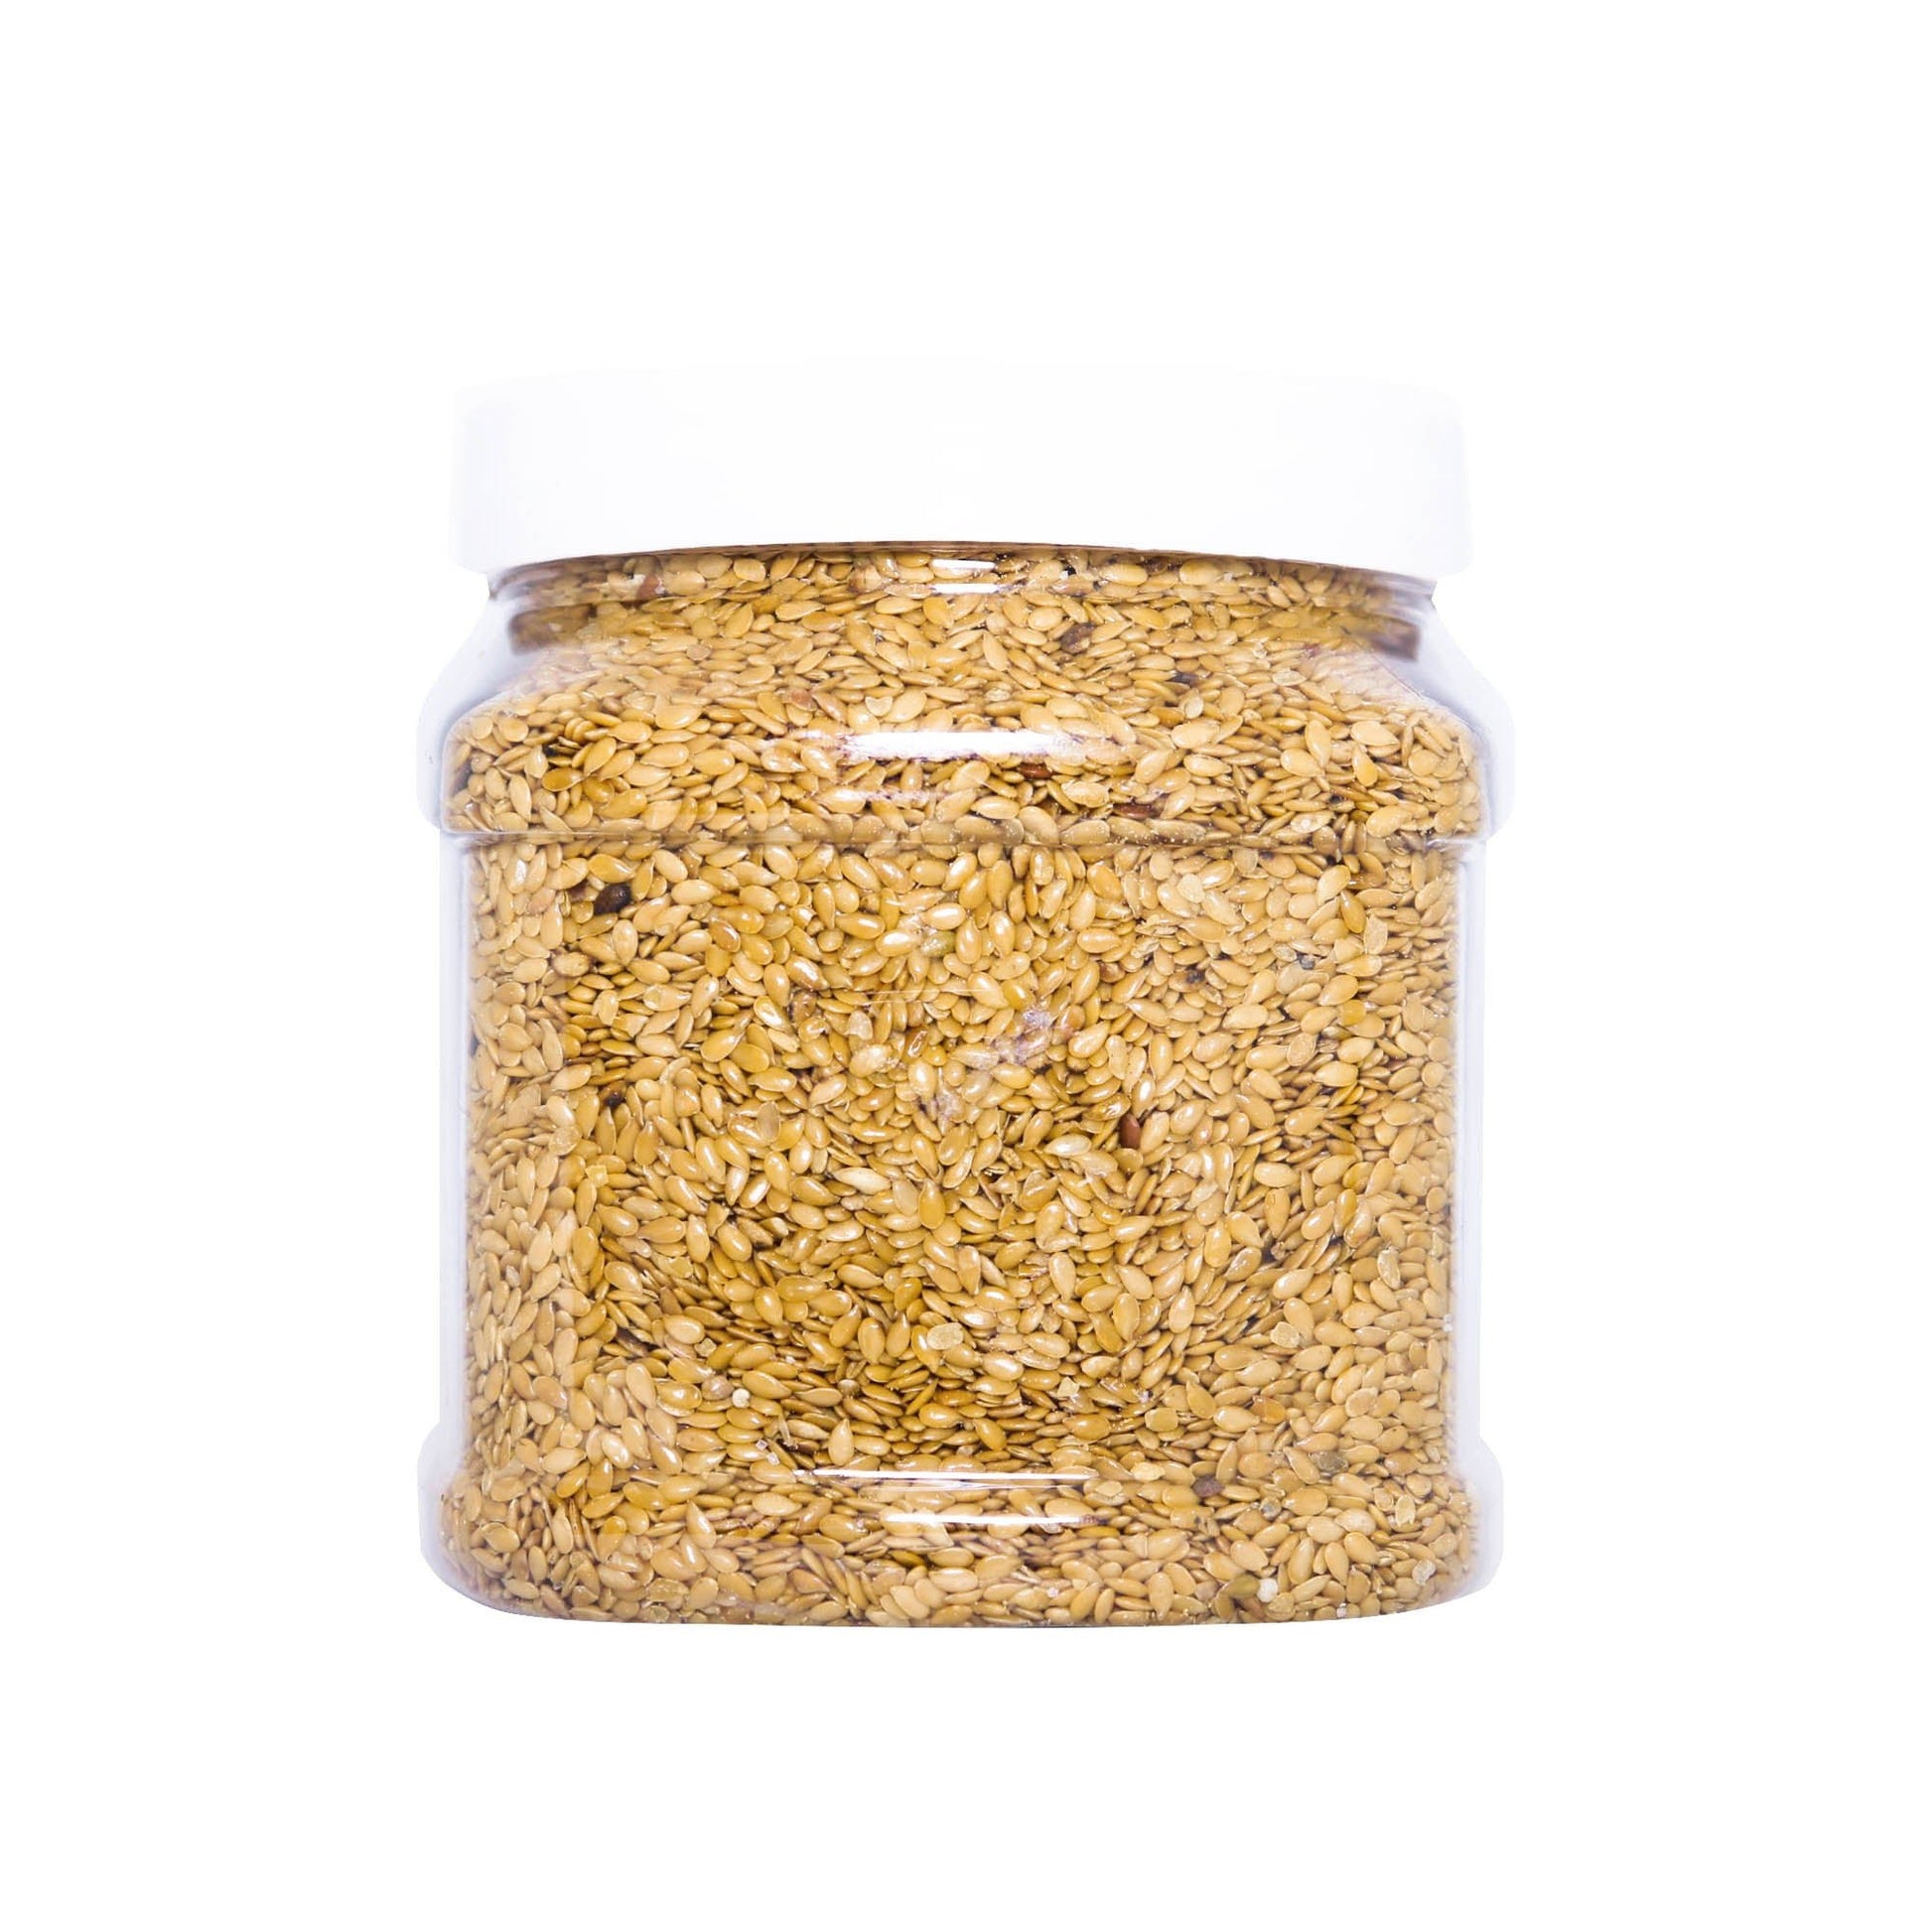 Golden Flax Seeds 750g - Tassyam Organics